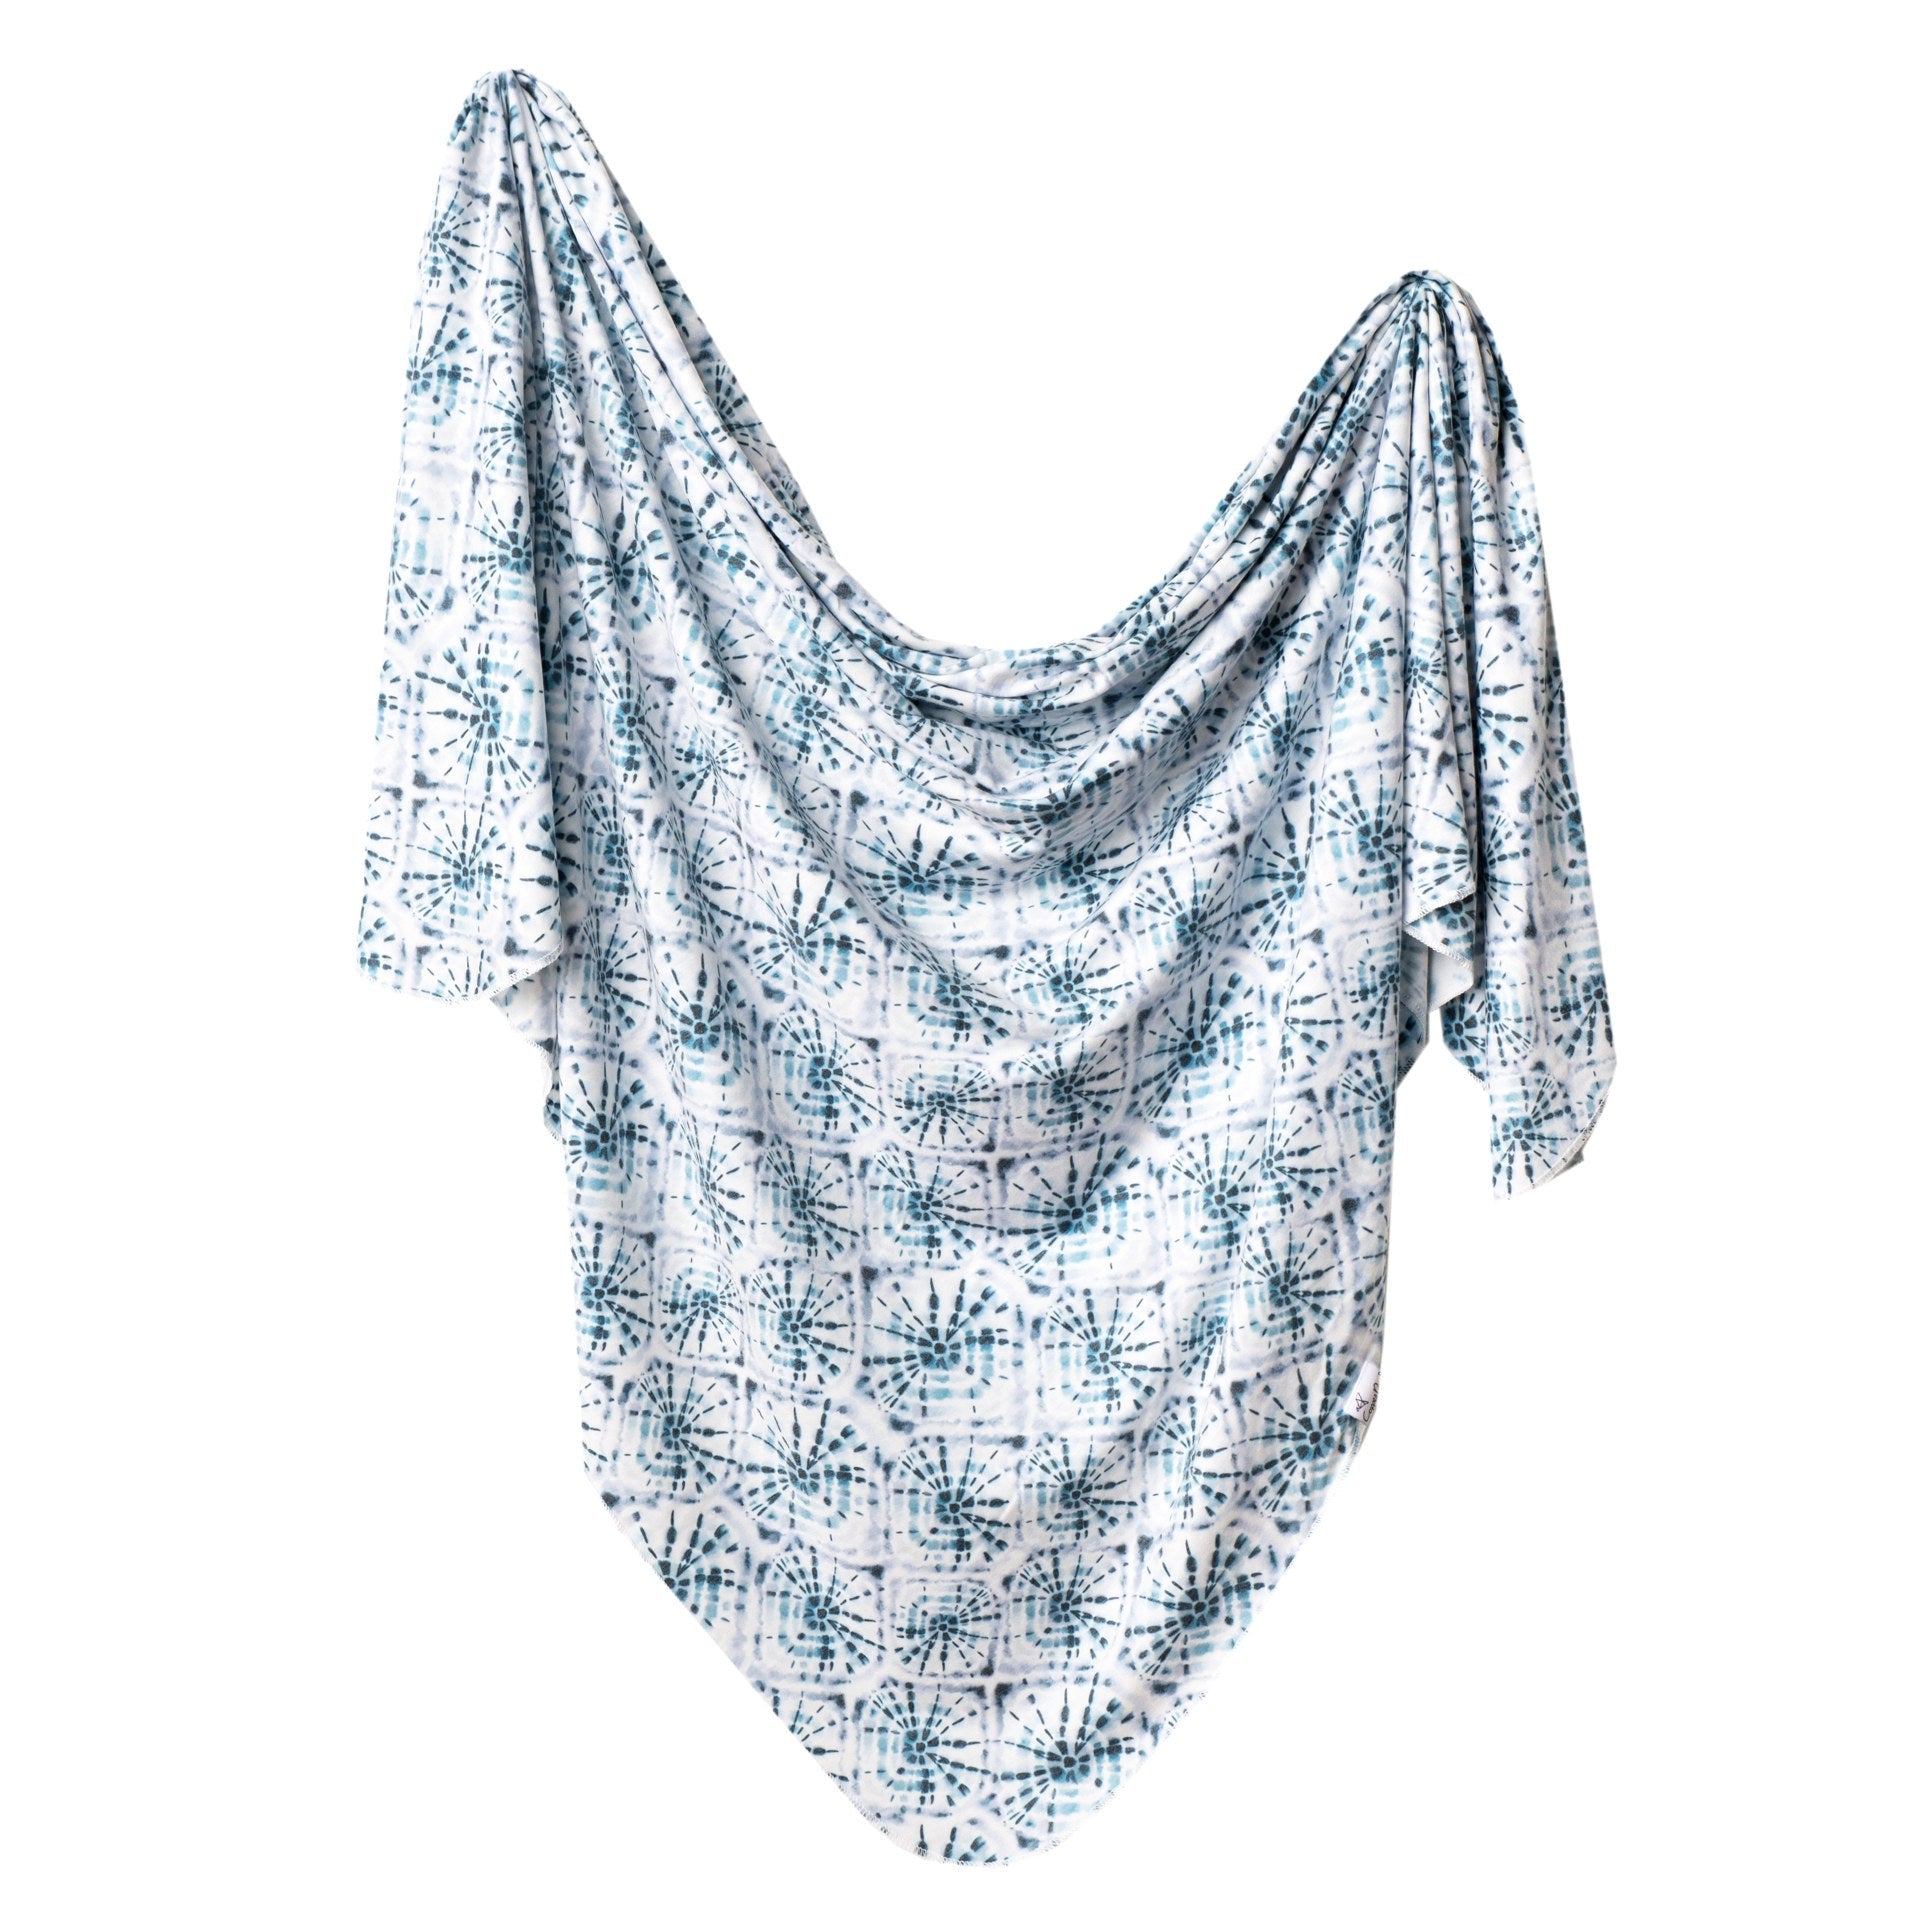 Knit Swaddle Blanket - Indigo